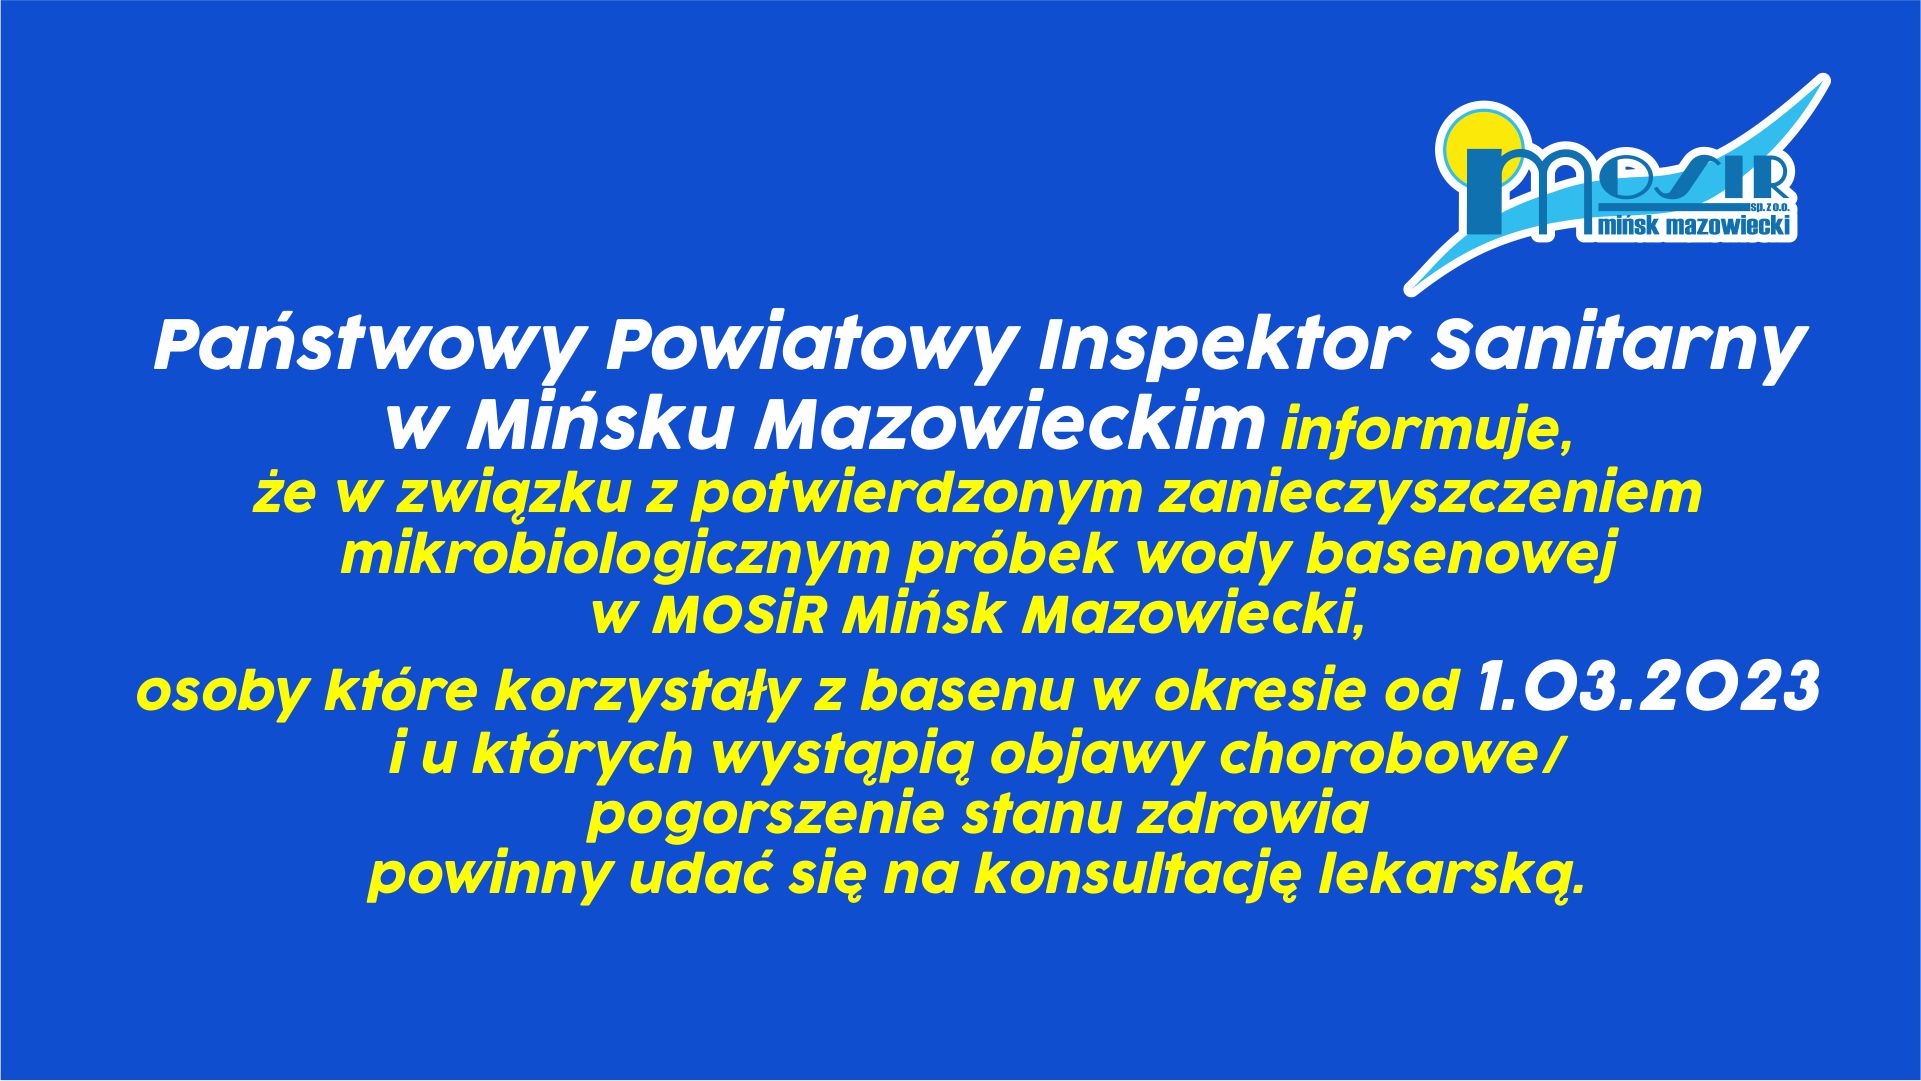 Państwowy Powiatowy Inspektor Sanitarny w Mińsku Mazowieckim informuje, że w związku z potwierdzonym zanieczyszczeniem mikrobiologicznym próbek wody basenowej w MOSiR Mińsk Mazowiecki, osoby które korzystały z basenu w okresie od 1.03.2023 r., i u których wystąpią objawy chorobowe/pogorszenie stanu zdrowia powinny udać się na konsultację lekarską.